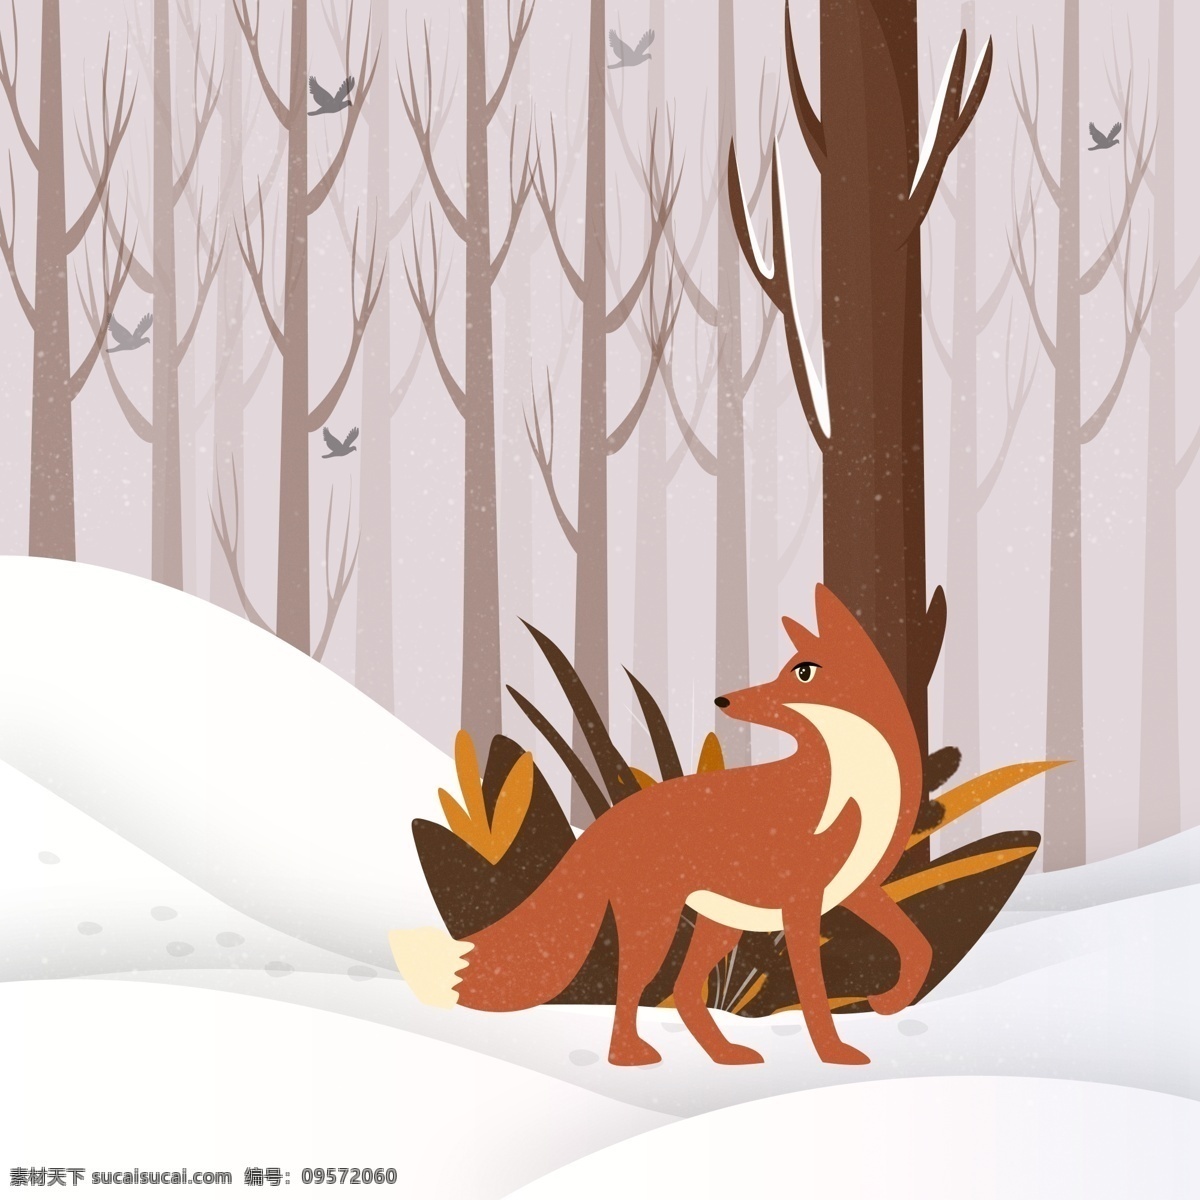 冬季 雪 树林 里 觅食 小 狐狸 冬季元素 冬天雪地 漫步的狐狸